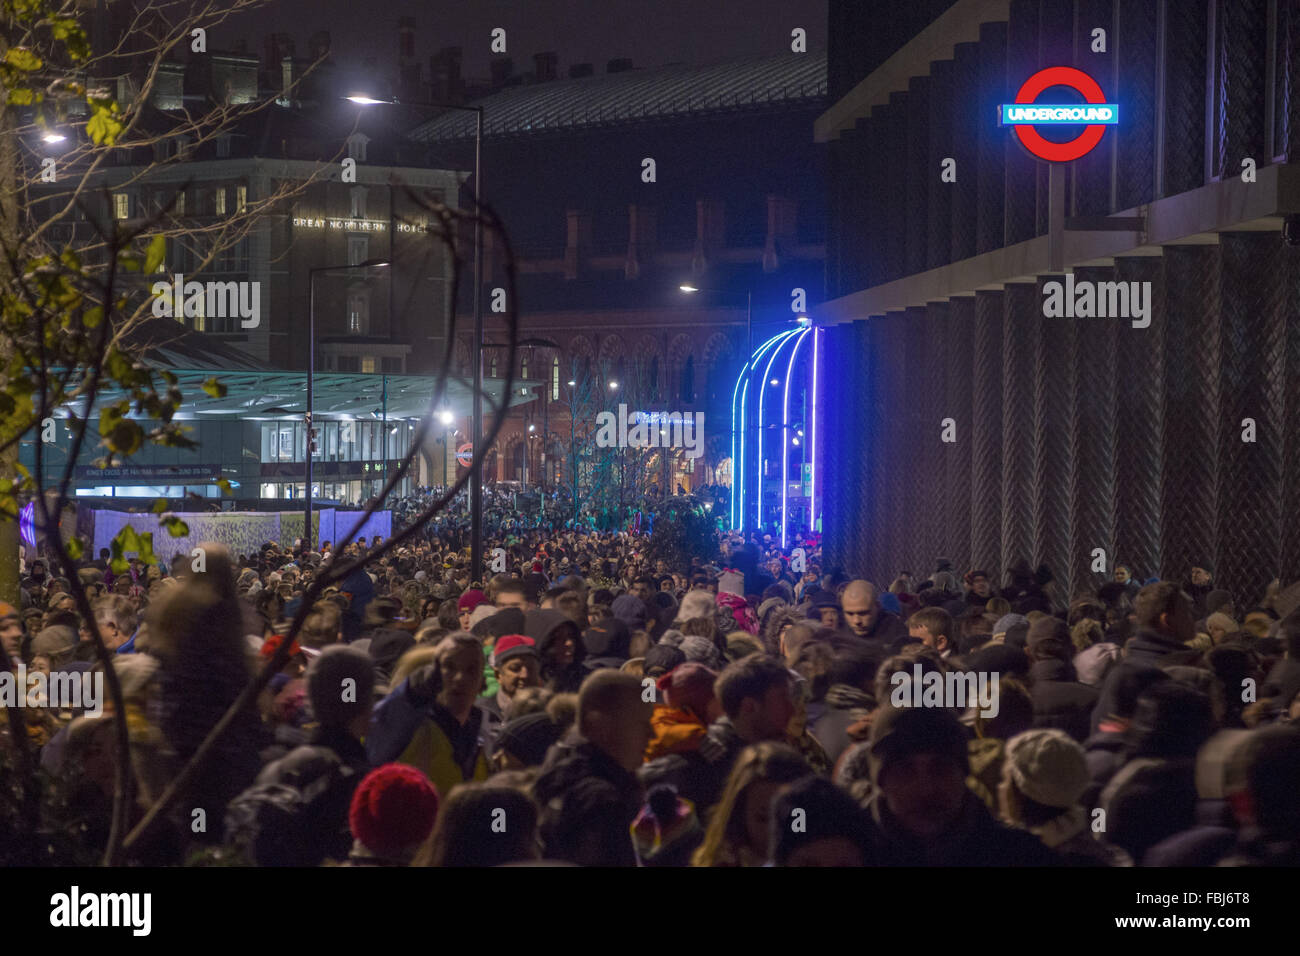 Londra, Regno Unito. 16 gennaio, 2016. Lumiere folle di migliaia stipati nelle strade di Londra Kings Cross in grado di vedere qualcosa di credito: Marcus Tylor/Alamy Live News Foto Stock